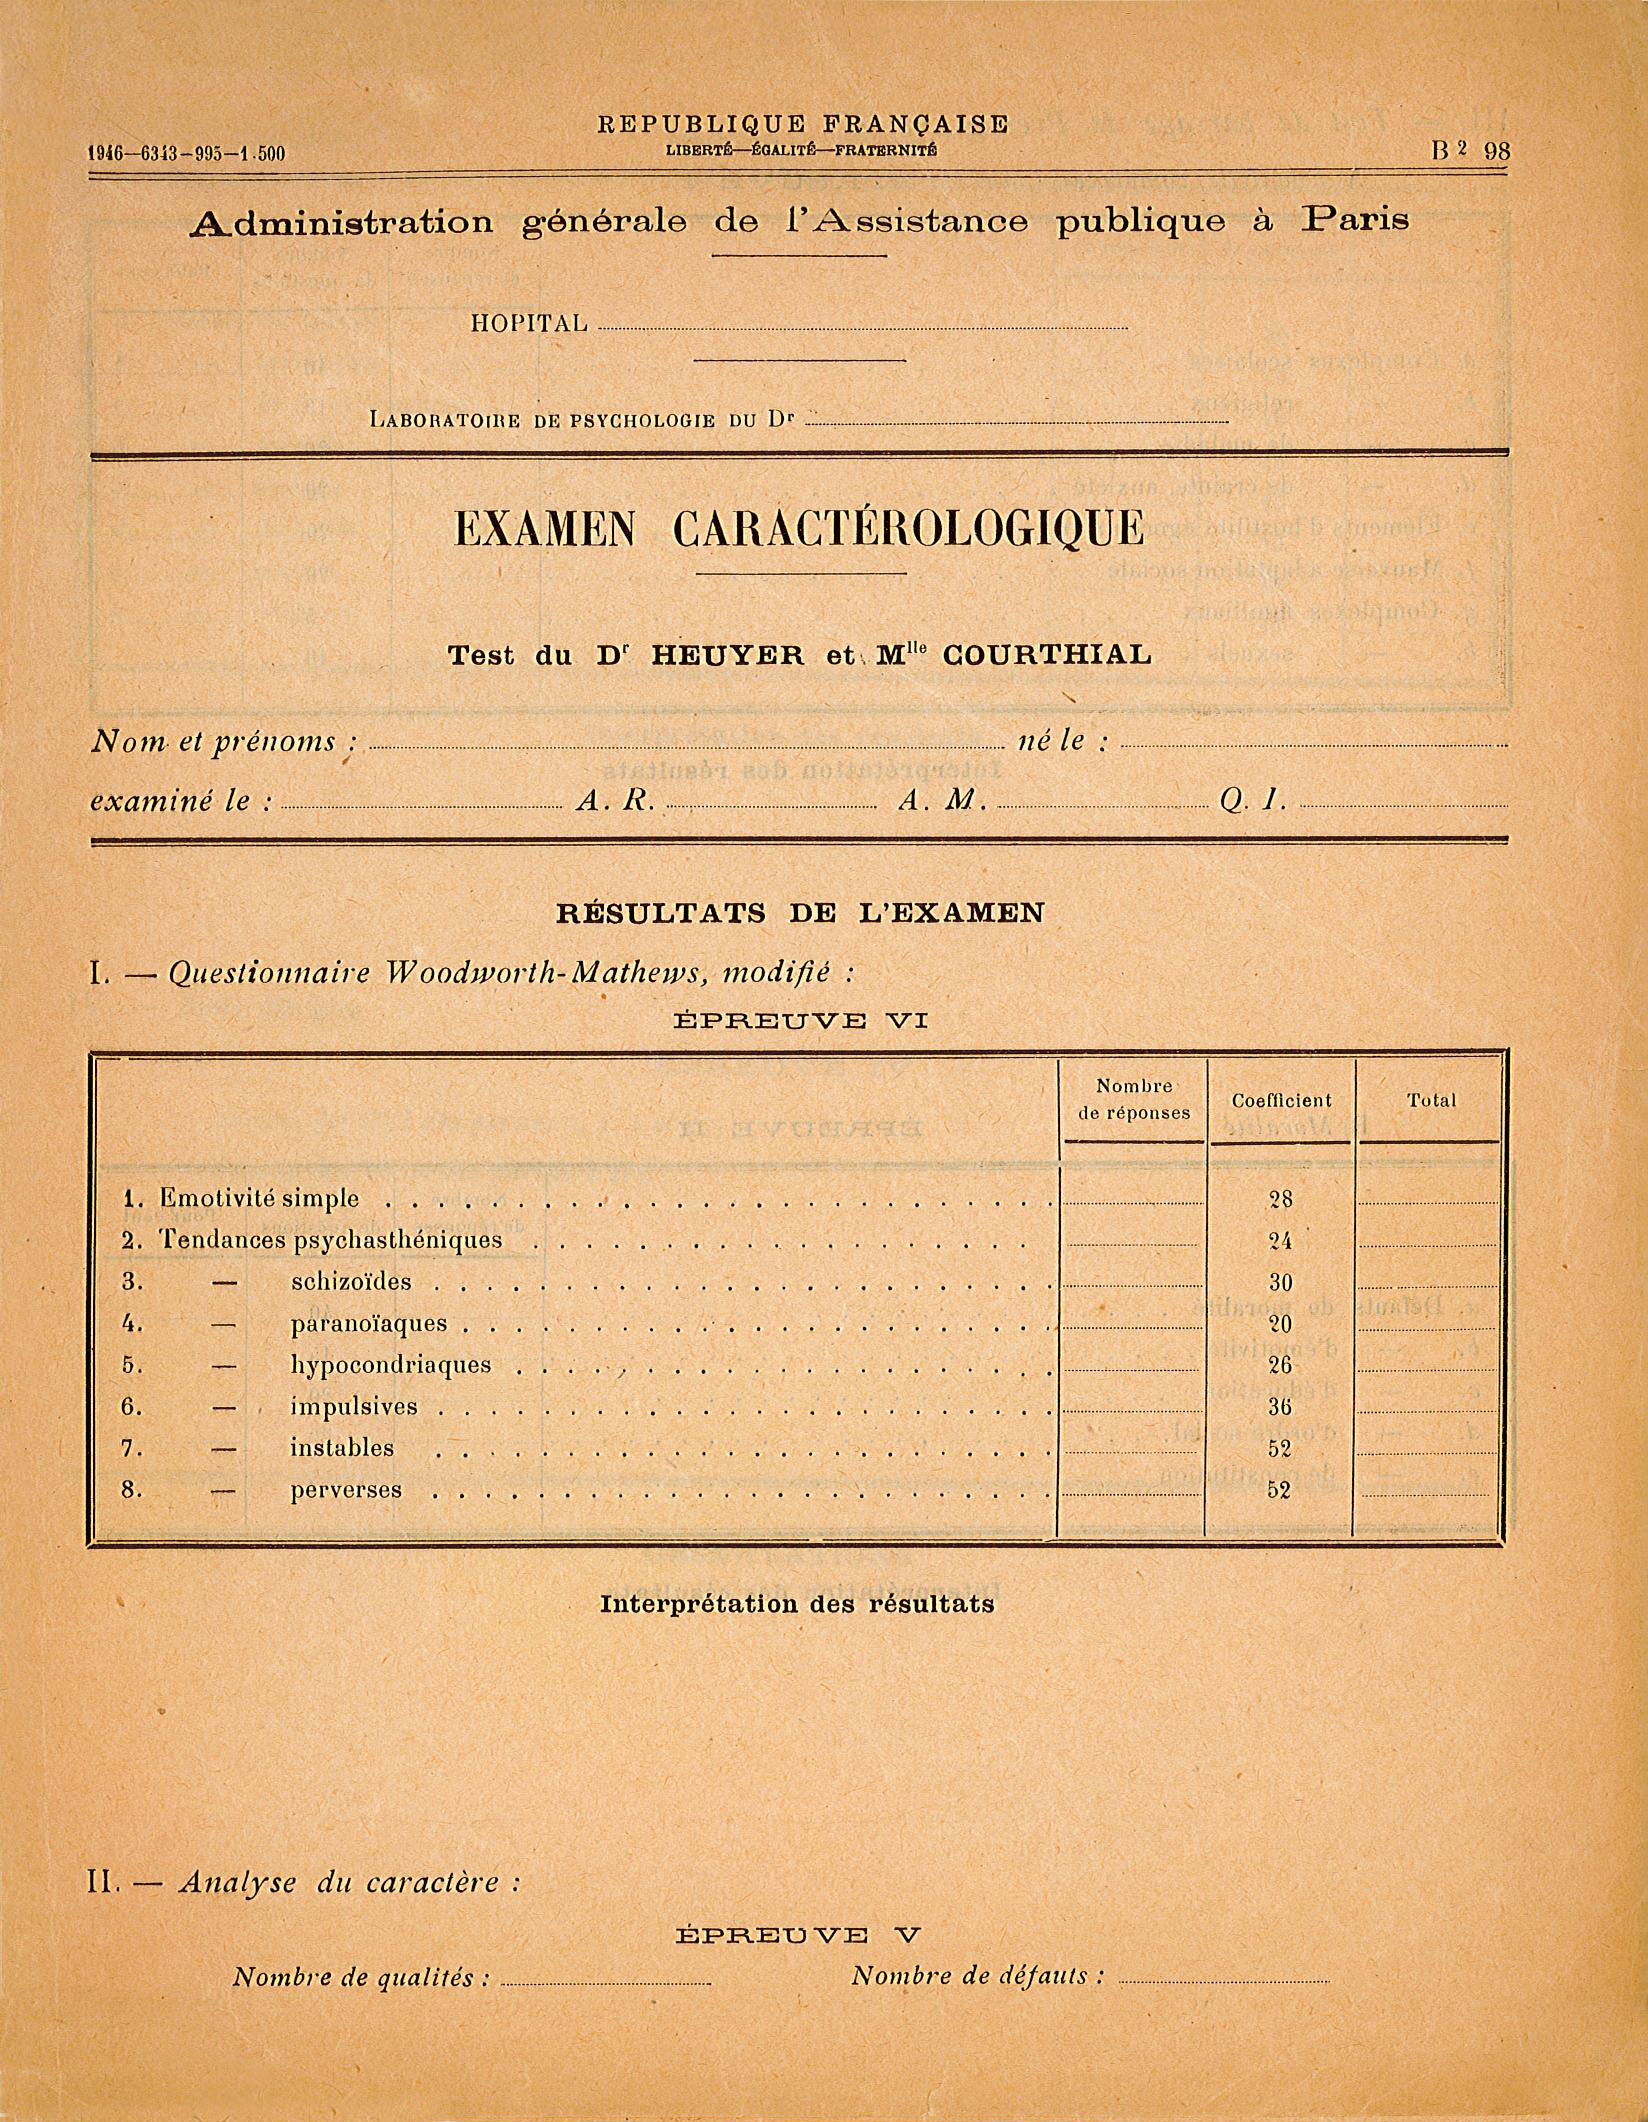 Examen caractérologique, questionnaire de Woodworth-Mathews modifié, 1946